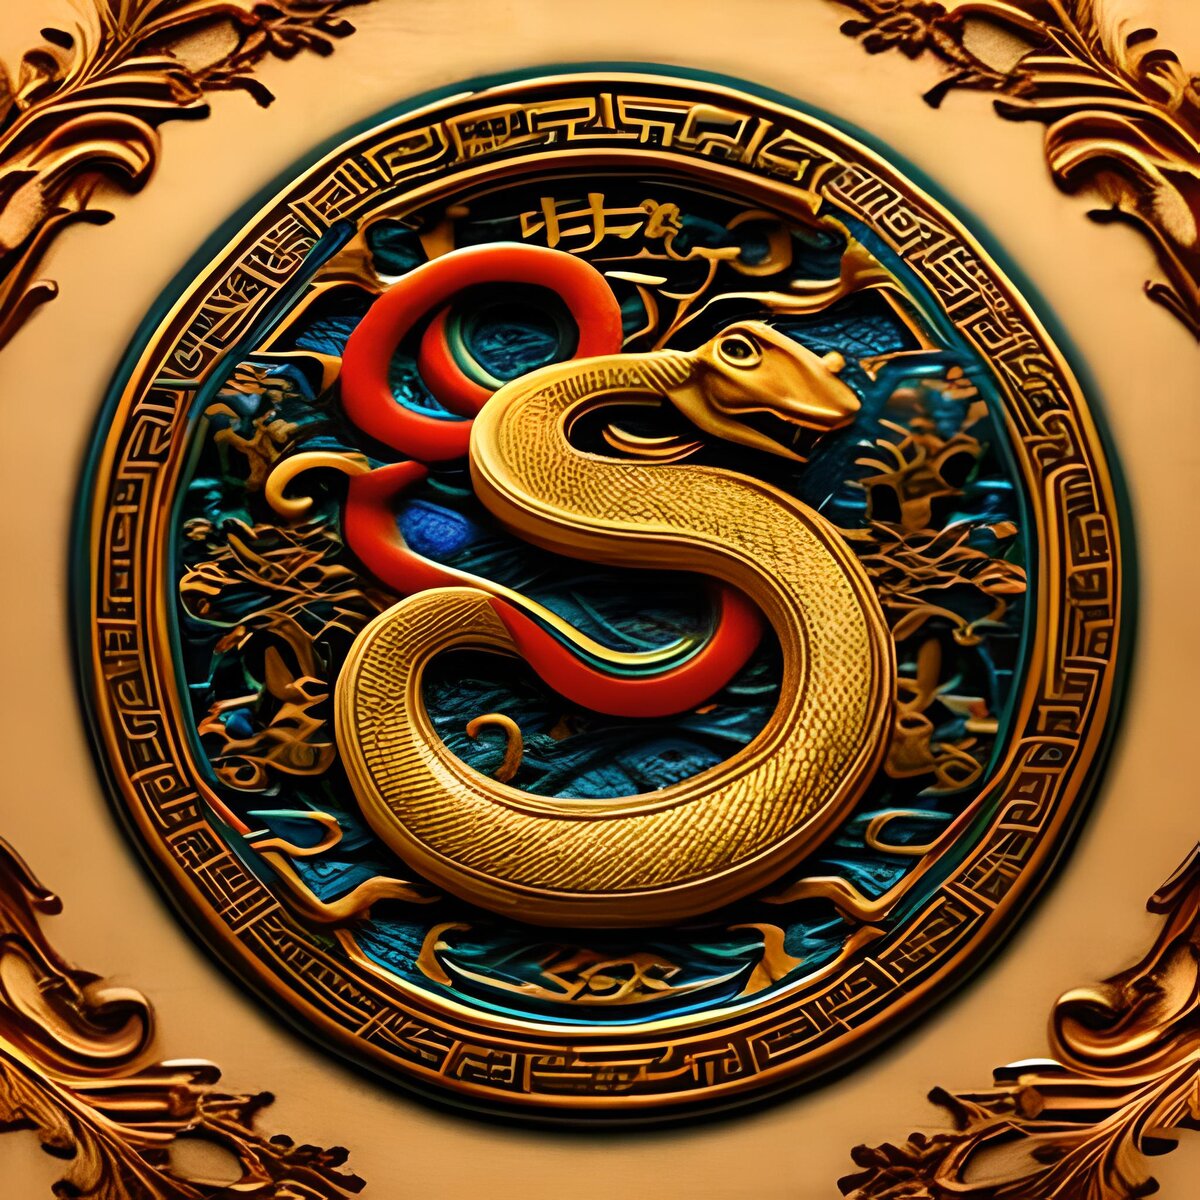 Гороскоп змеи лев. Дракон китайский Зодиак. Символы Китая. Астрологическая змея. Драконы в Восточном стиле от нейросетей.